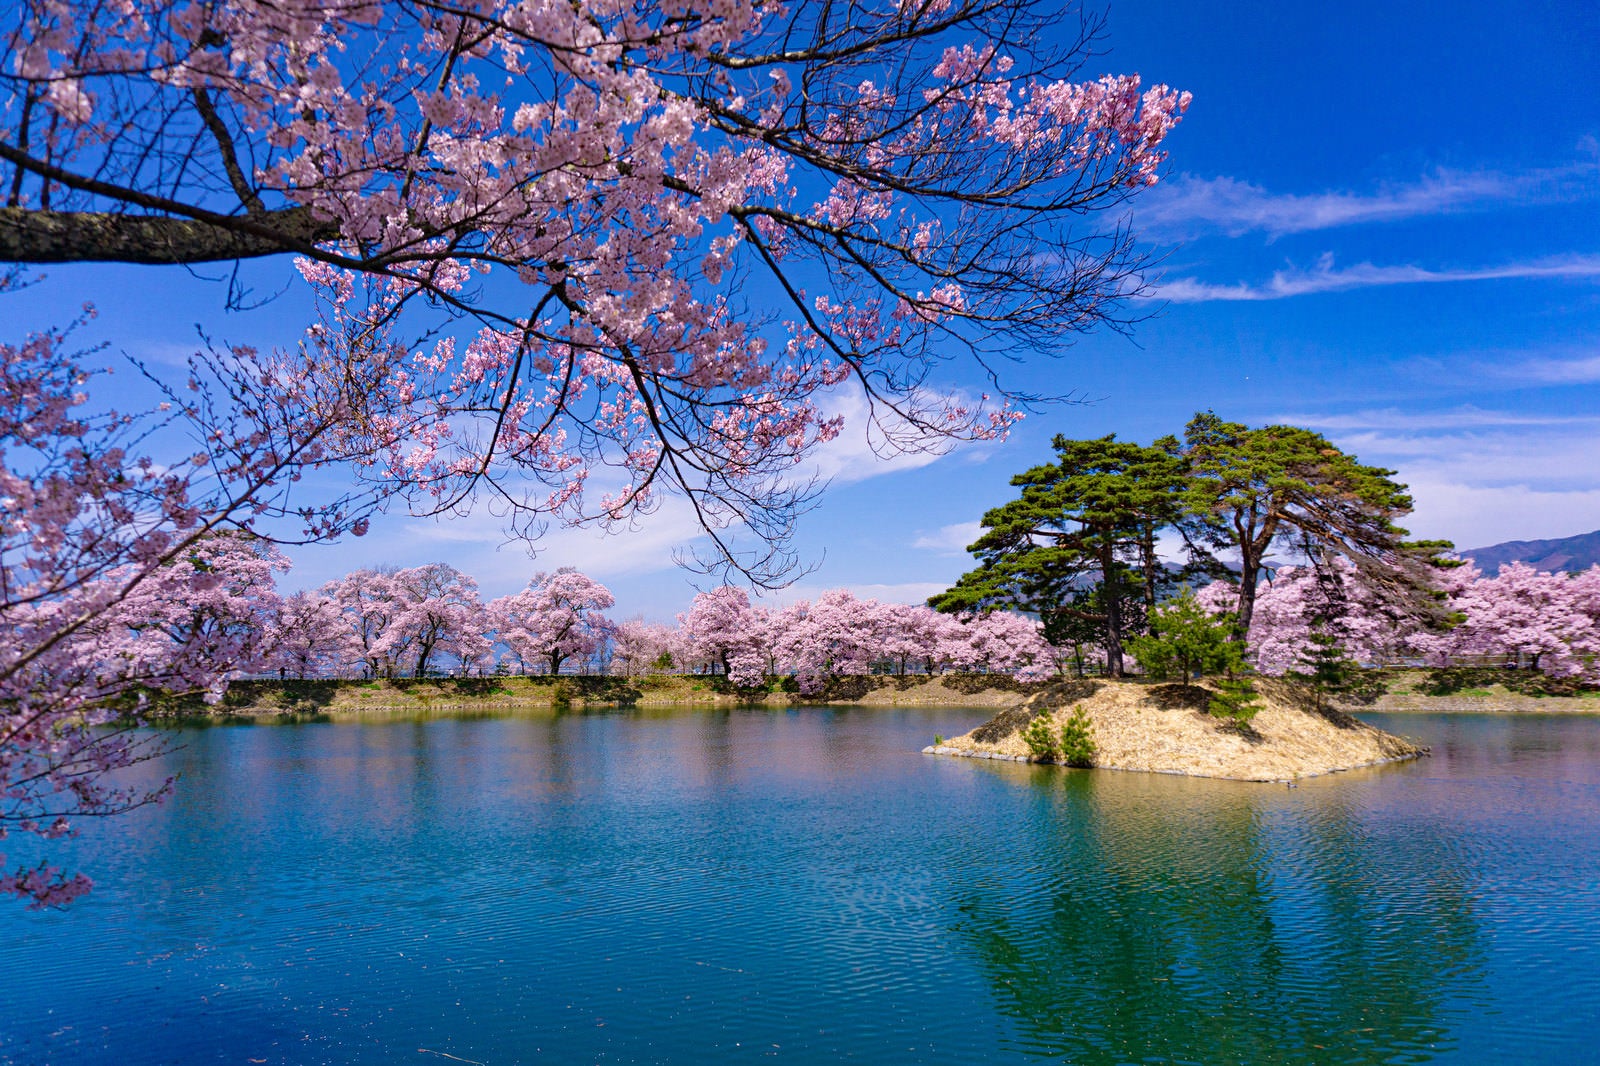 「満開の桜に彩られる池と小さな島」の写真